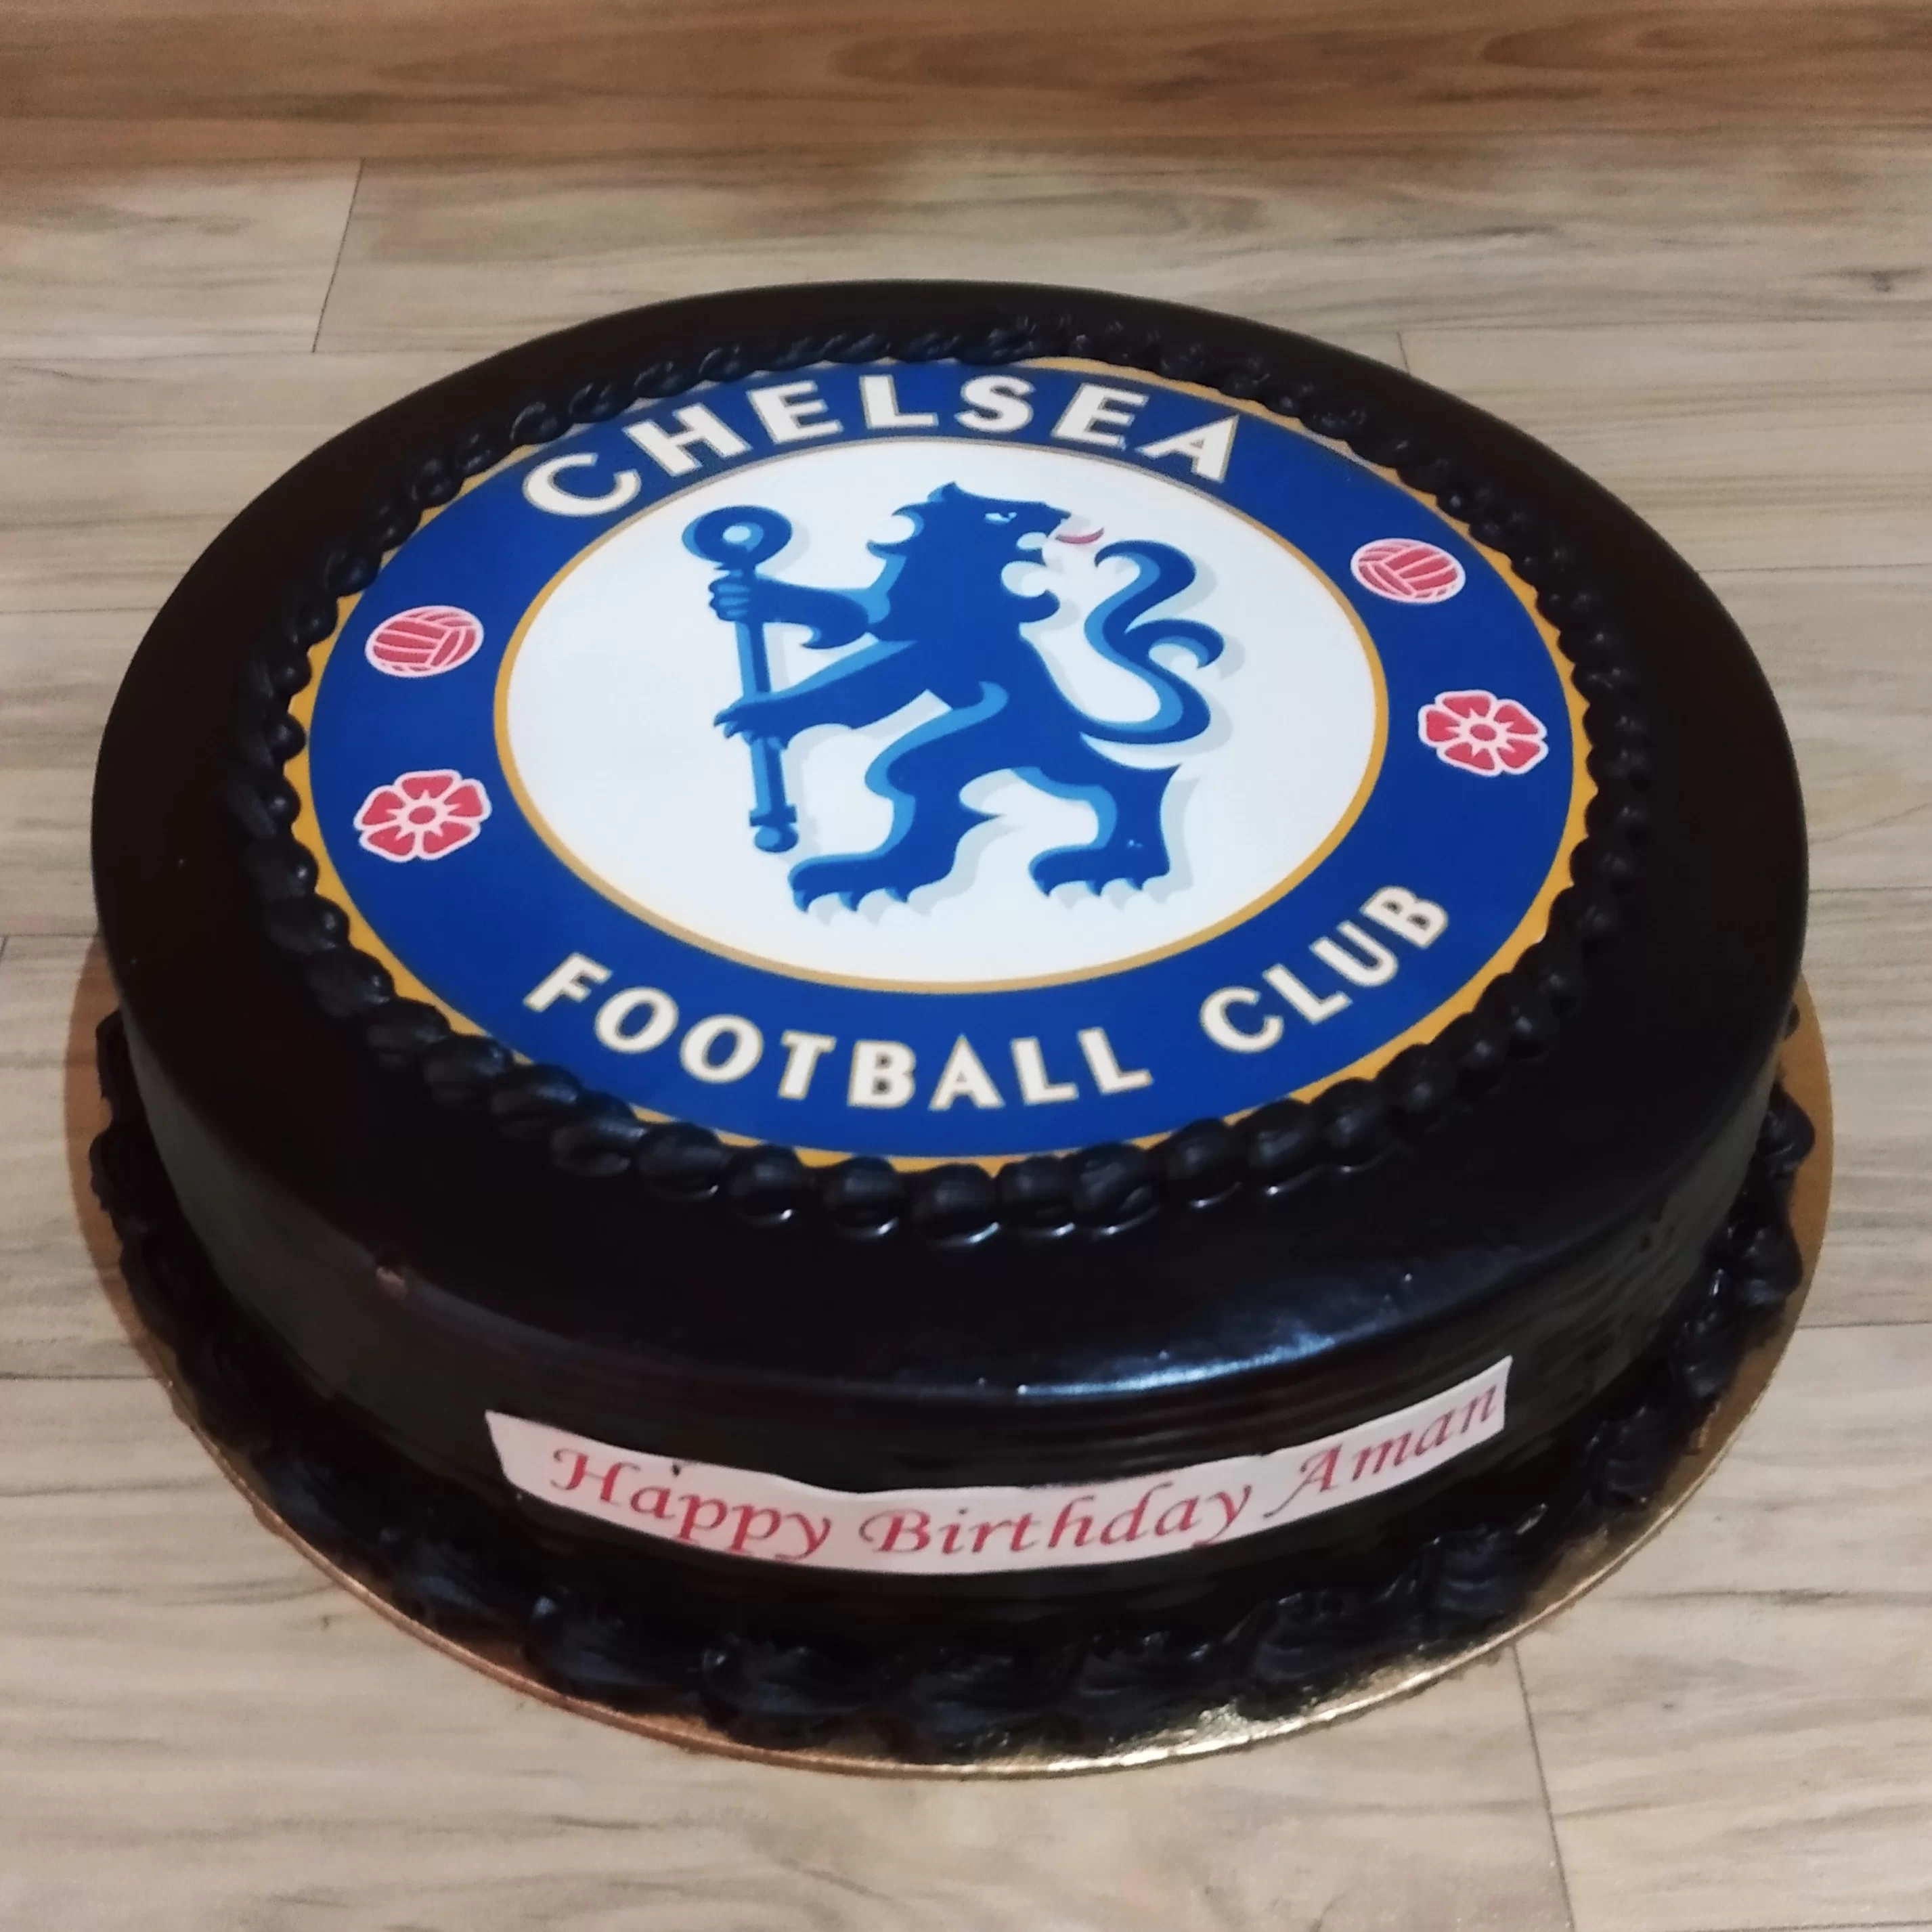 Chelsea Theme Birthday Cake✨ #birthday #cake #chelseacake #birthdaycake # chelsea #cakedecorating #chelseafc #chelseafans #cakedesign ... | Instagram